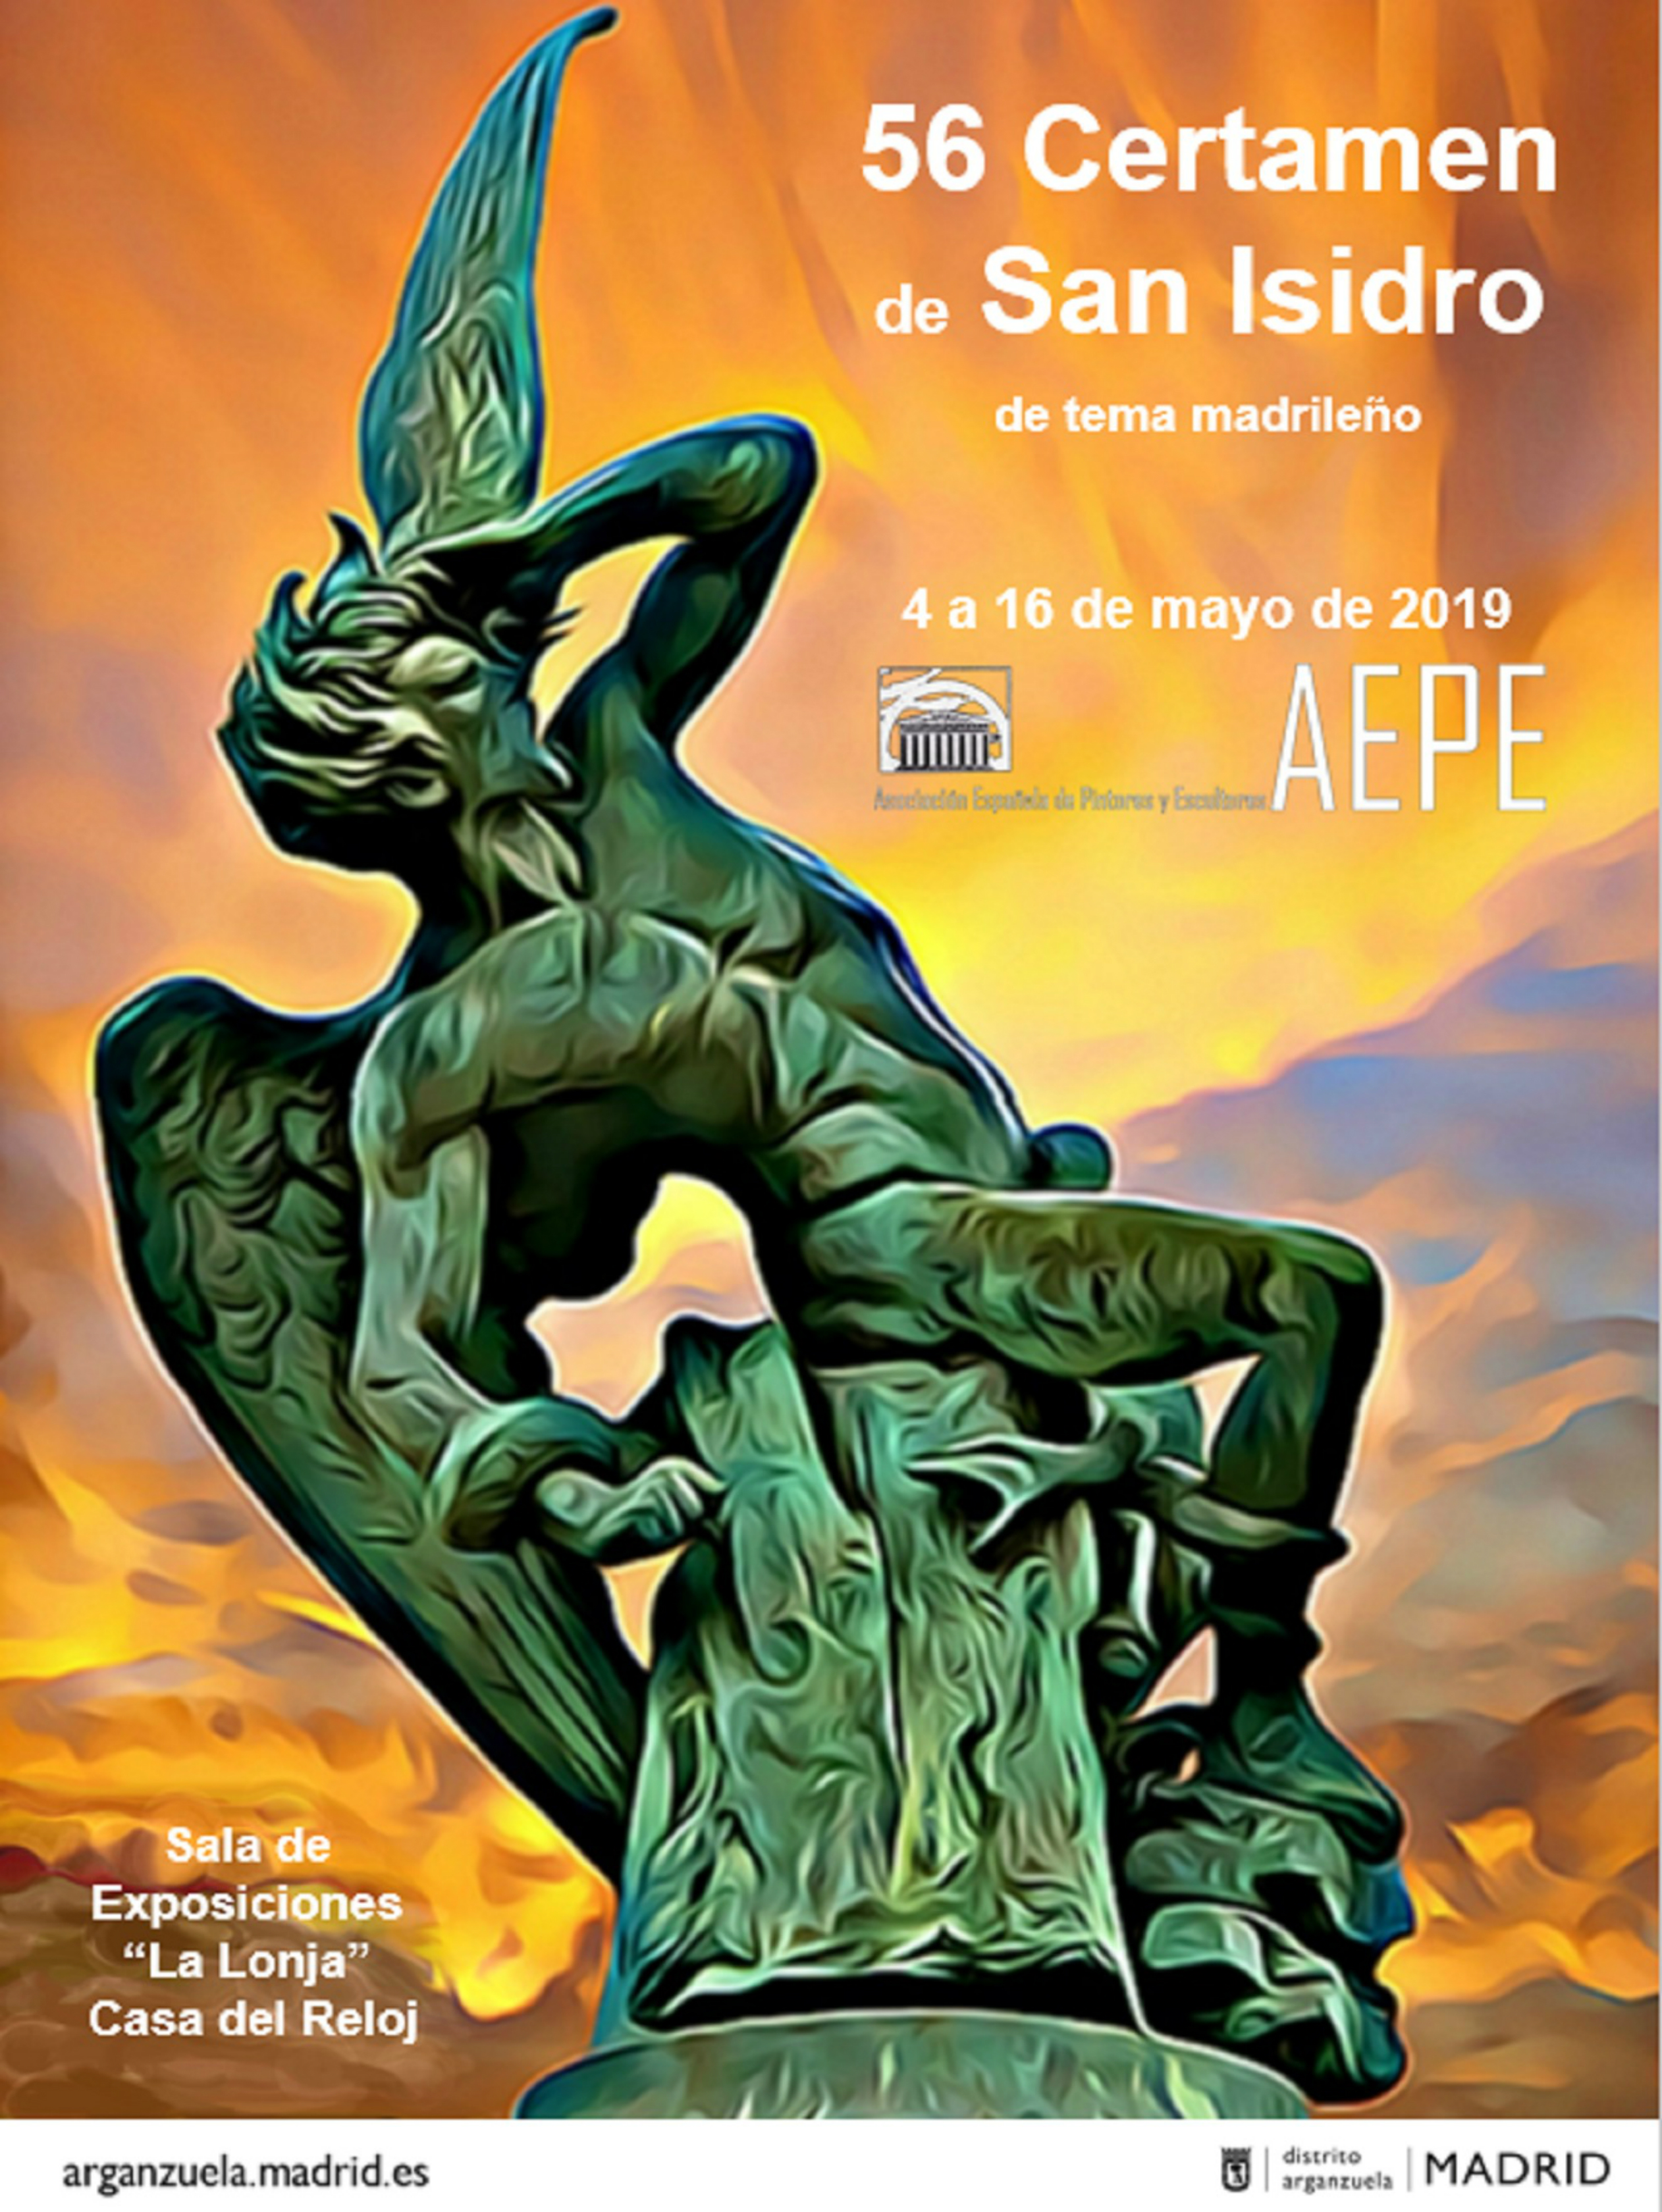 Certamen San Isidro, 2019 - Asociación Española Pintores y Escultores